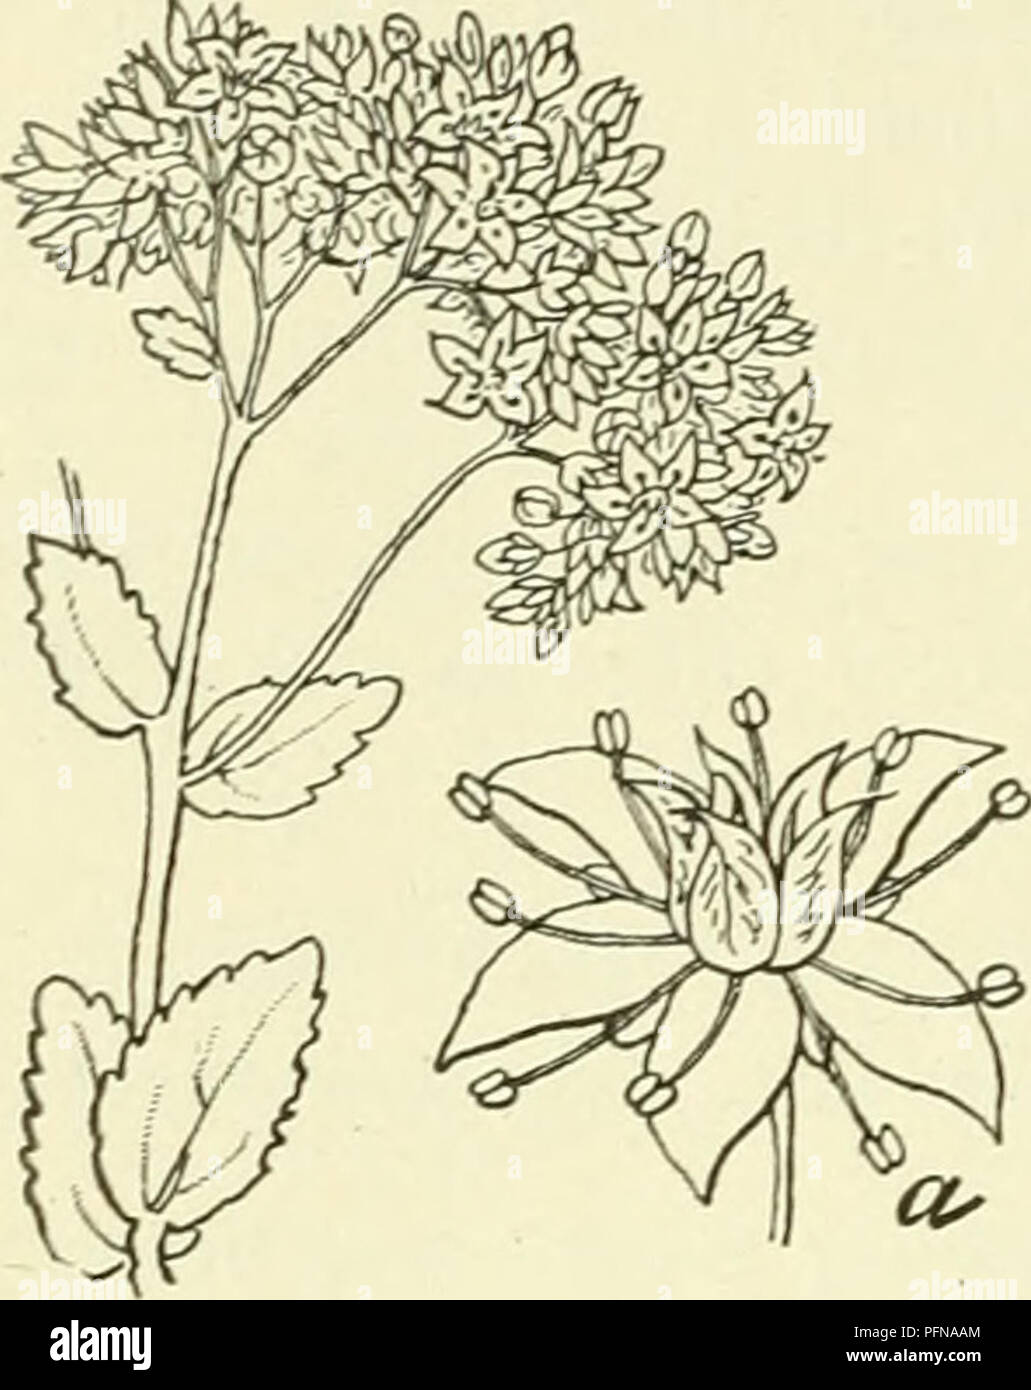 . De flora van Nederland. Plants. 472 CRASSULACEAE. FAMILIE 69.. Sedum purpureum Fig. 572. a bloem. S. purpureum O Lk. (S. Teléphium-) L., S. purpurascens-) Koch.). H e- m e 1 s 1 e u t e 1 (fig. 572). Deze onbehaarde, krachtige plant, heeft knolvormig verdikte wortels, waaruit vele, meest onvertakte, rechtopstaande, vaak rood aangeloopen sten- gels voortkomen. De bladen zijn vleezig, vlak, langwerpig tot lancetvormig, de onderste zijn kortgesteeld, meest tegenoverstaand of in kran- sen van 3, stomp, ongelijk gezaagd-getand, de bovenste zijn zittend met afgeronden voet. De bloemen vormen tuile Stock Photo